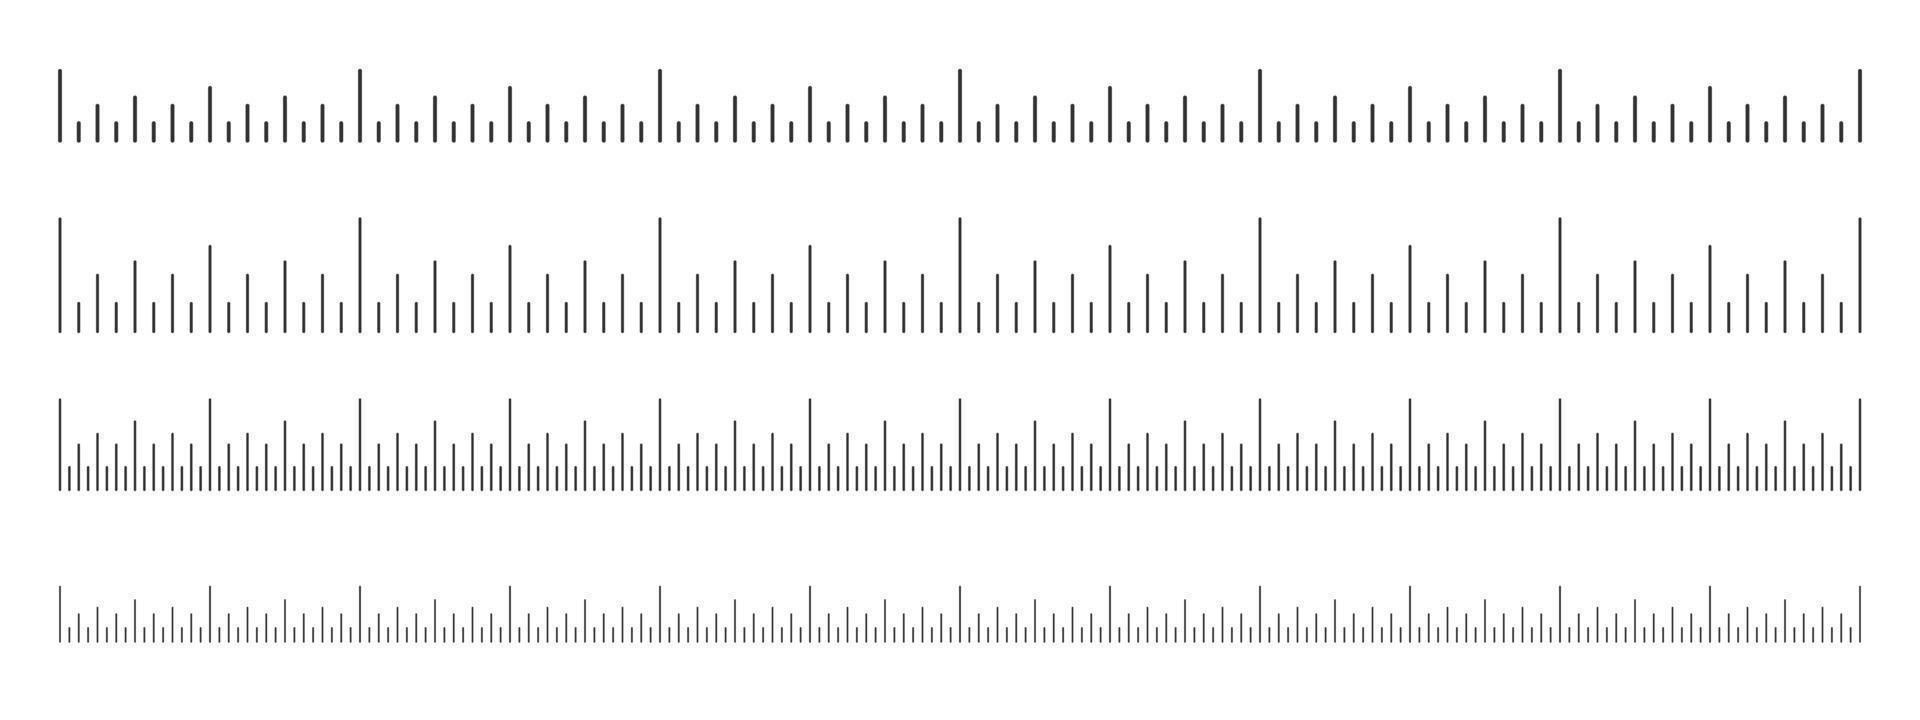 skala av linjal uppsättning. horisontell mätning Diagram med inches pålägg. distans, höjd eller längd mått matematik eller sömnad verktyg vektor